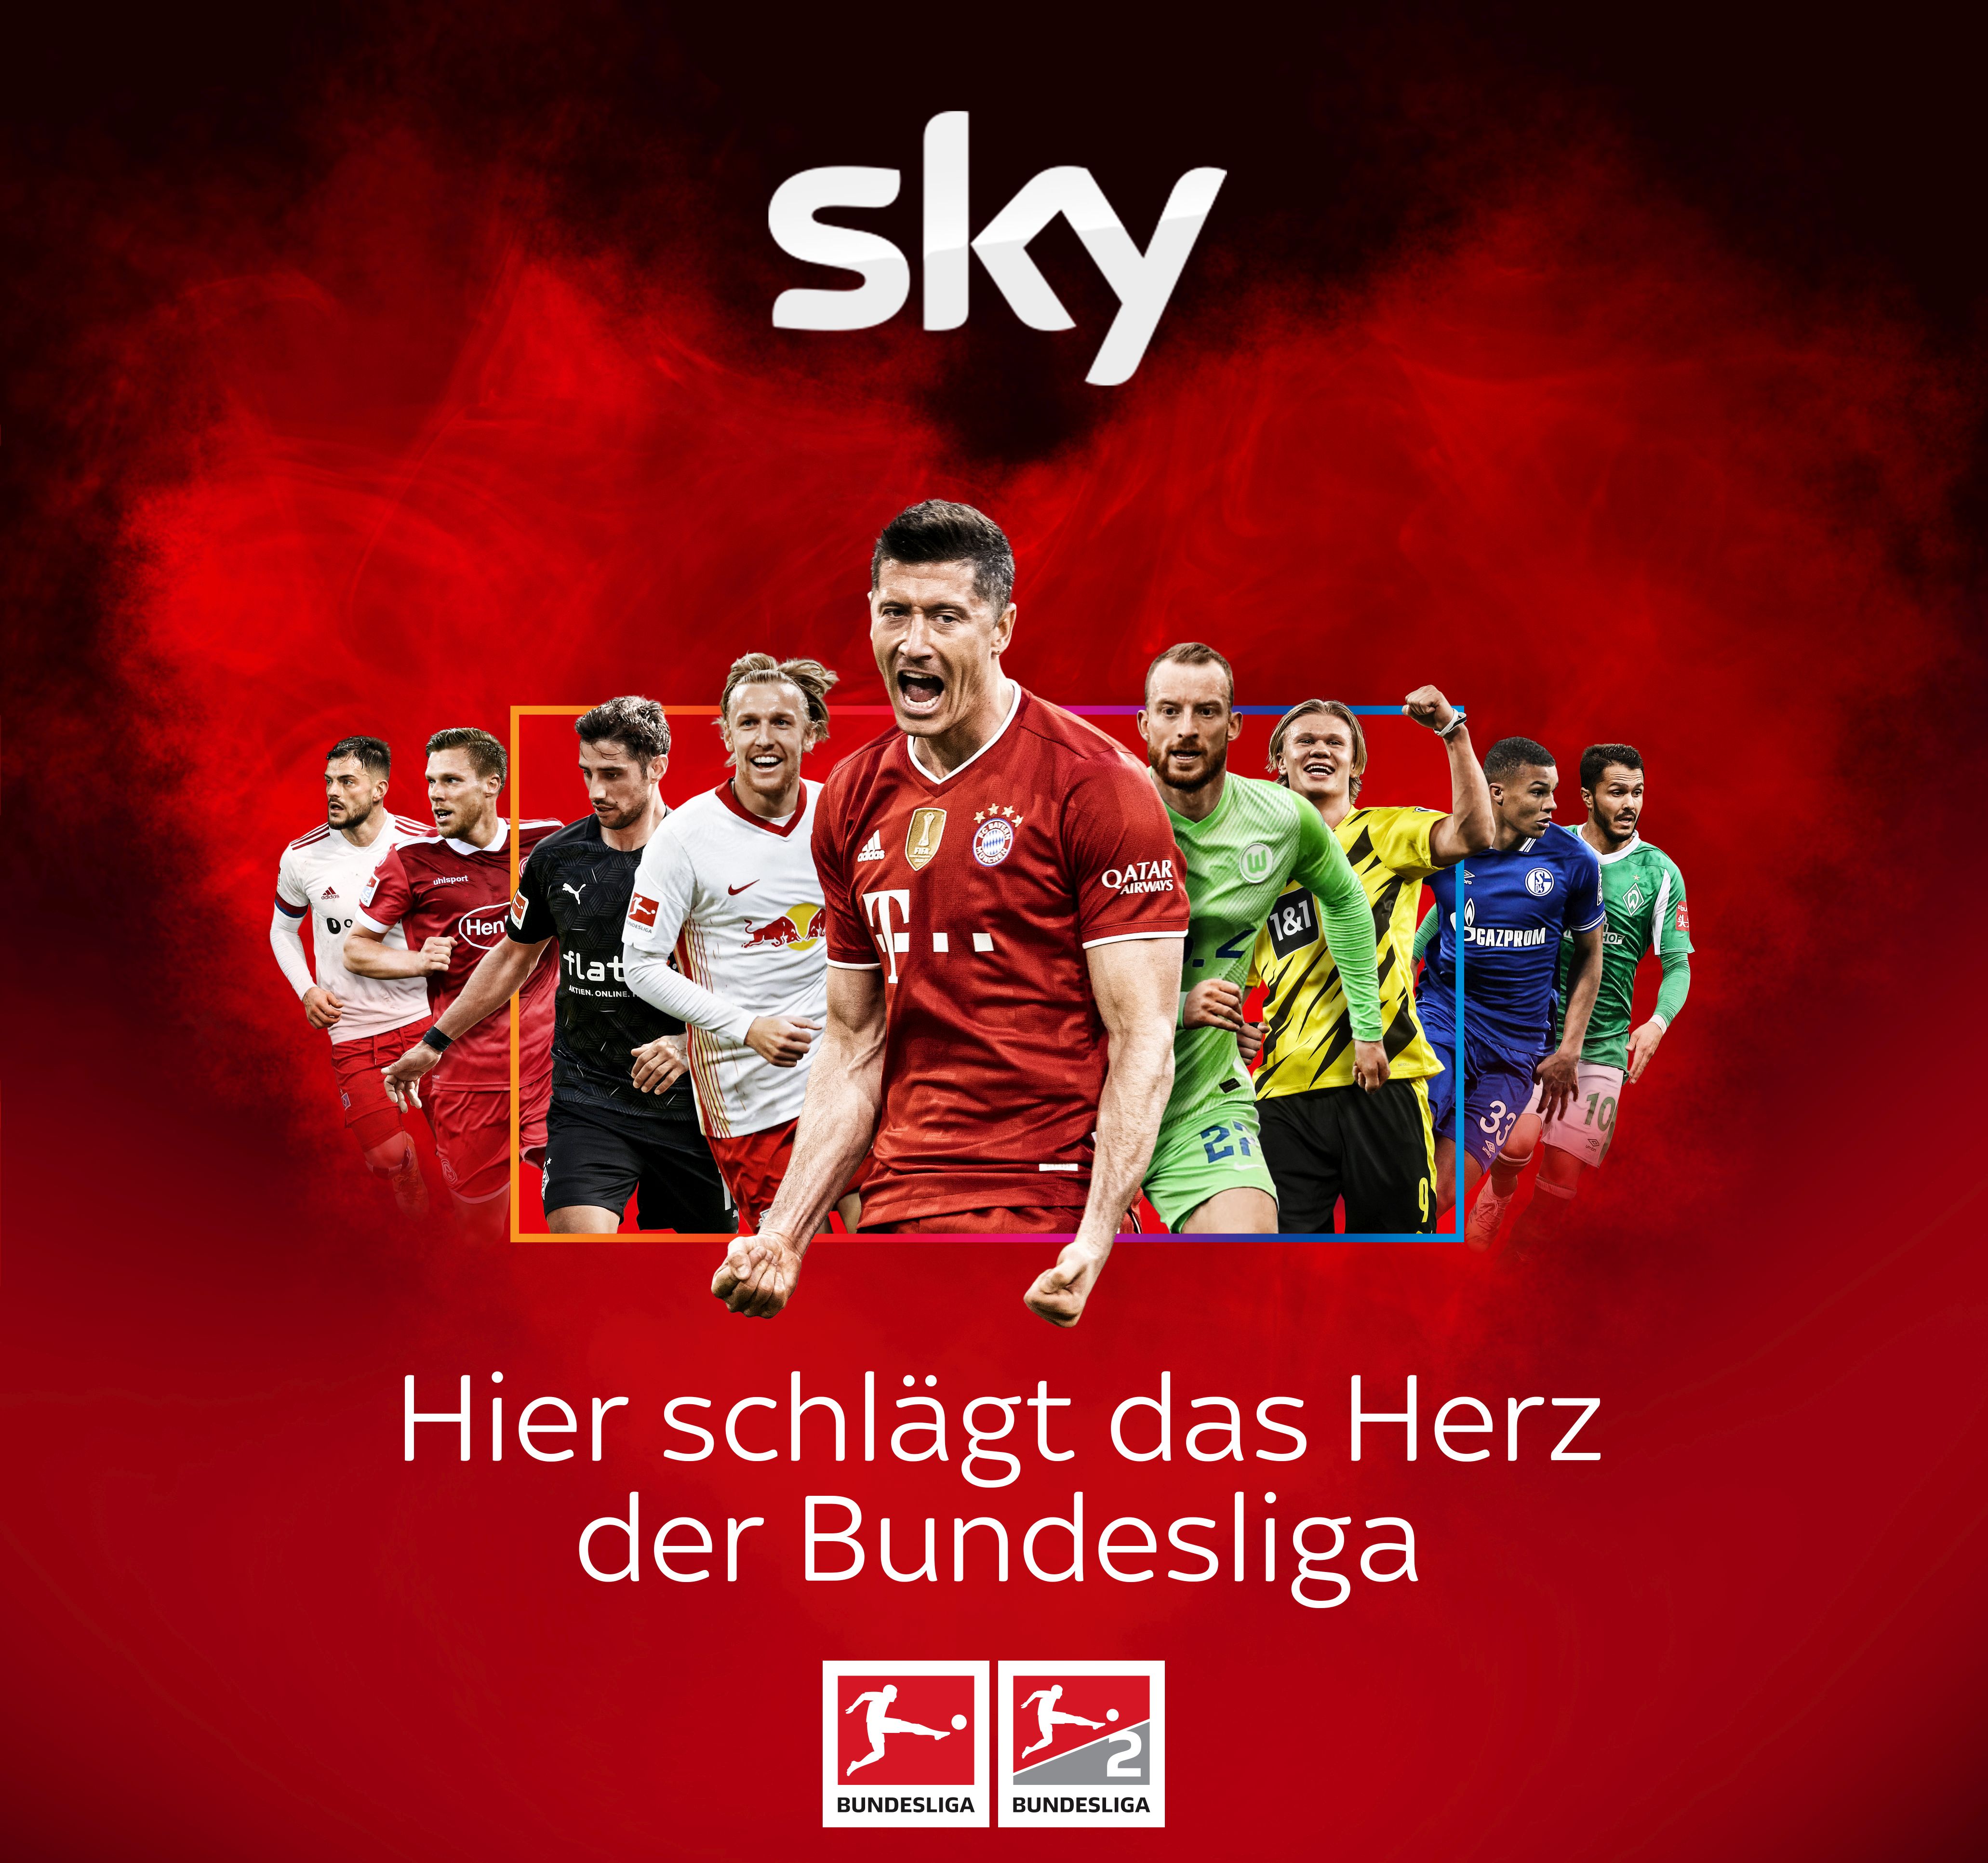 Die Saison 2021/22 bei Sky mit dem kompletten Bundesliga-Samstag live, allen Spielen ..